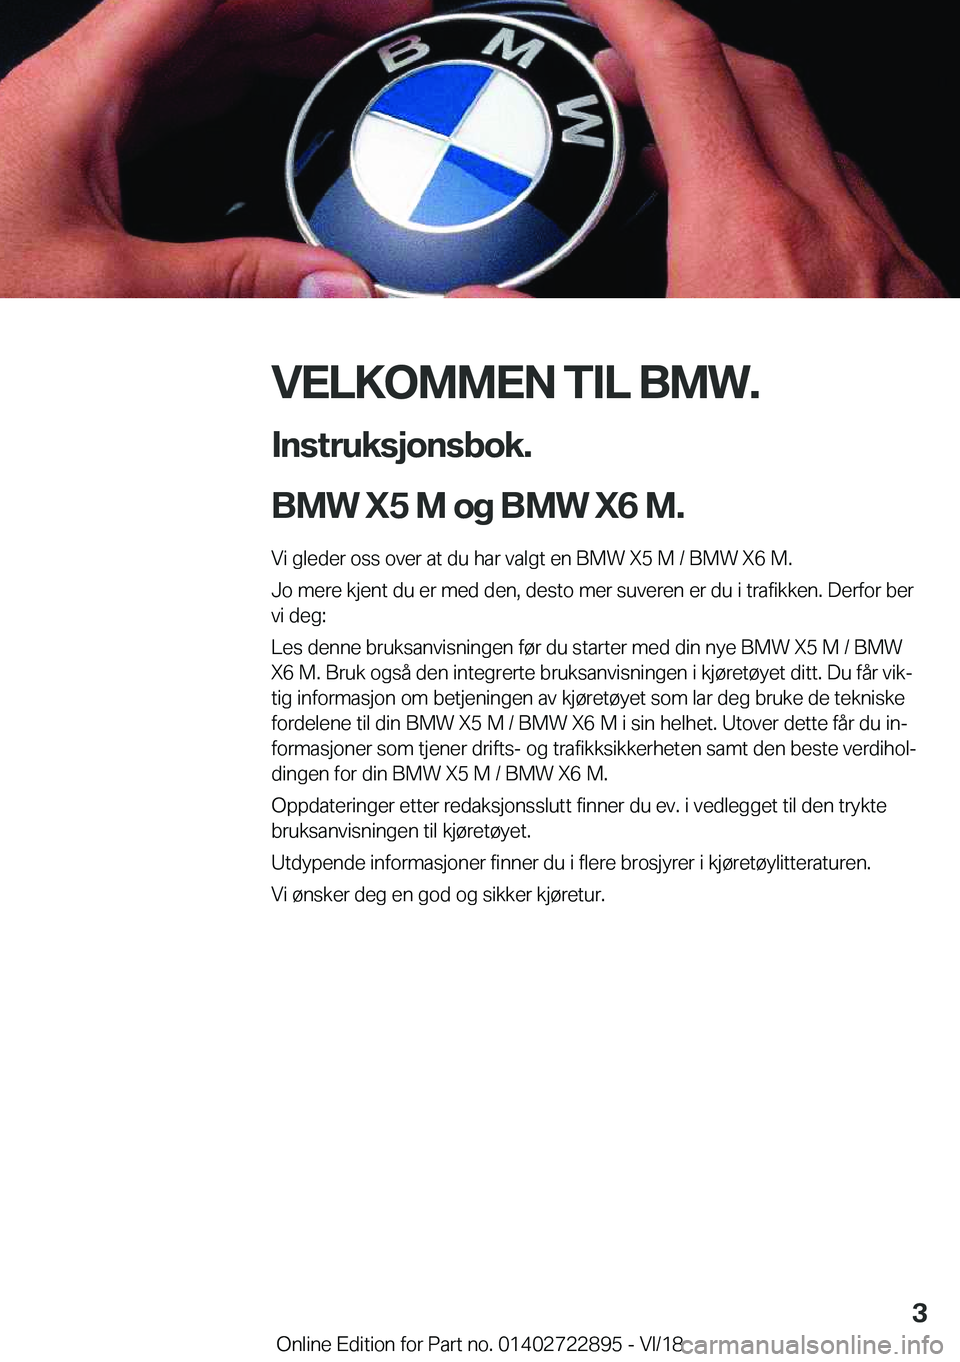 BMW X6 M 2019  InstruksjonsbØker (in Norwegian) �V�E�L�K�O�M�M�E�N��T�I�L��B�M�W�.�I�n�s�t�r�u�k�s�j�o�n�s�b�o�k�.
�B�M�W��X�5��M��o�g��B�M�W��X�6��M�.
�V�i��g�l�e�d�e�r��o�s�s��o�v�e�r��a�t��d�u��h�a�r��v�a�l�g�t��e�n��B�M�W��X�5